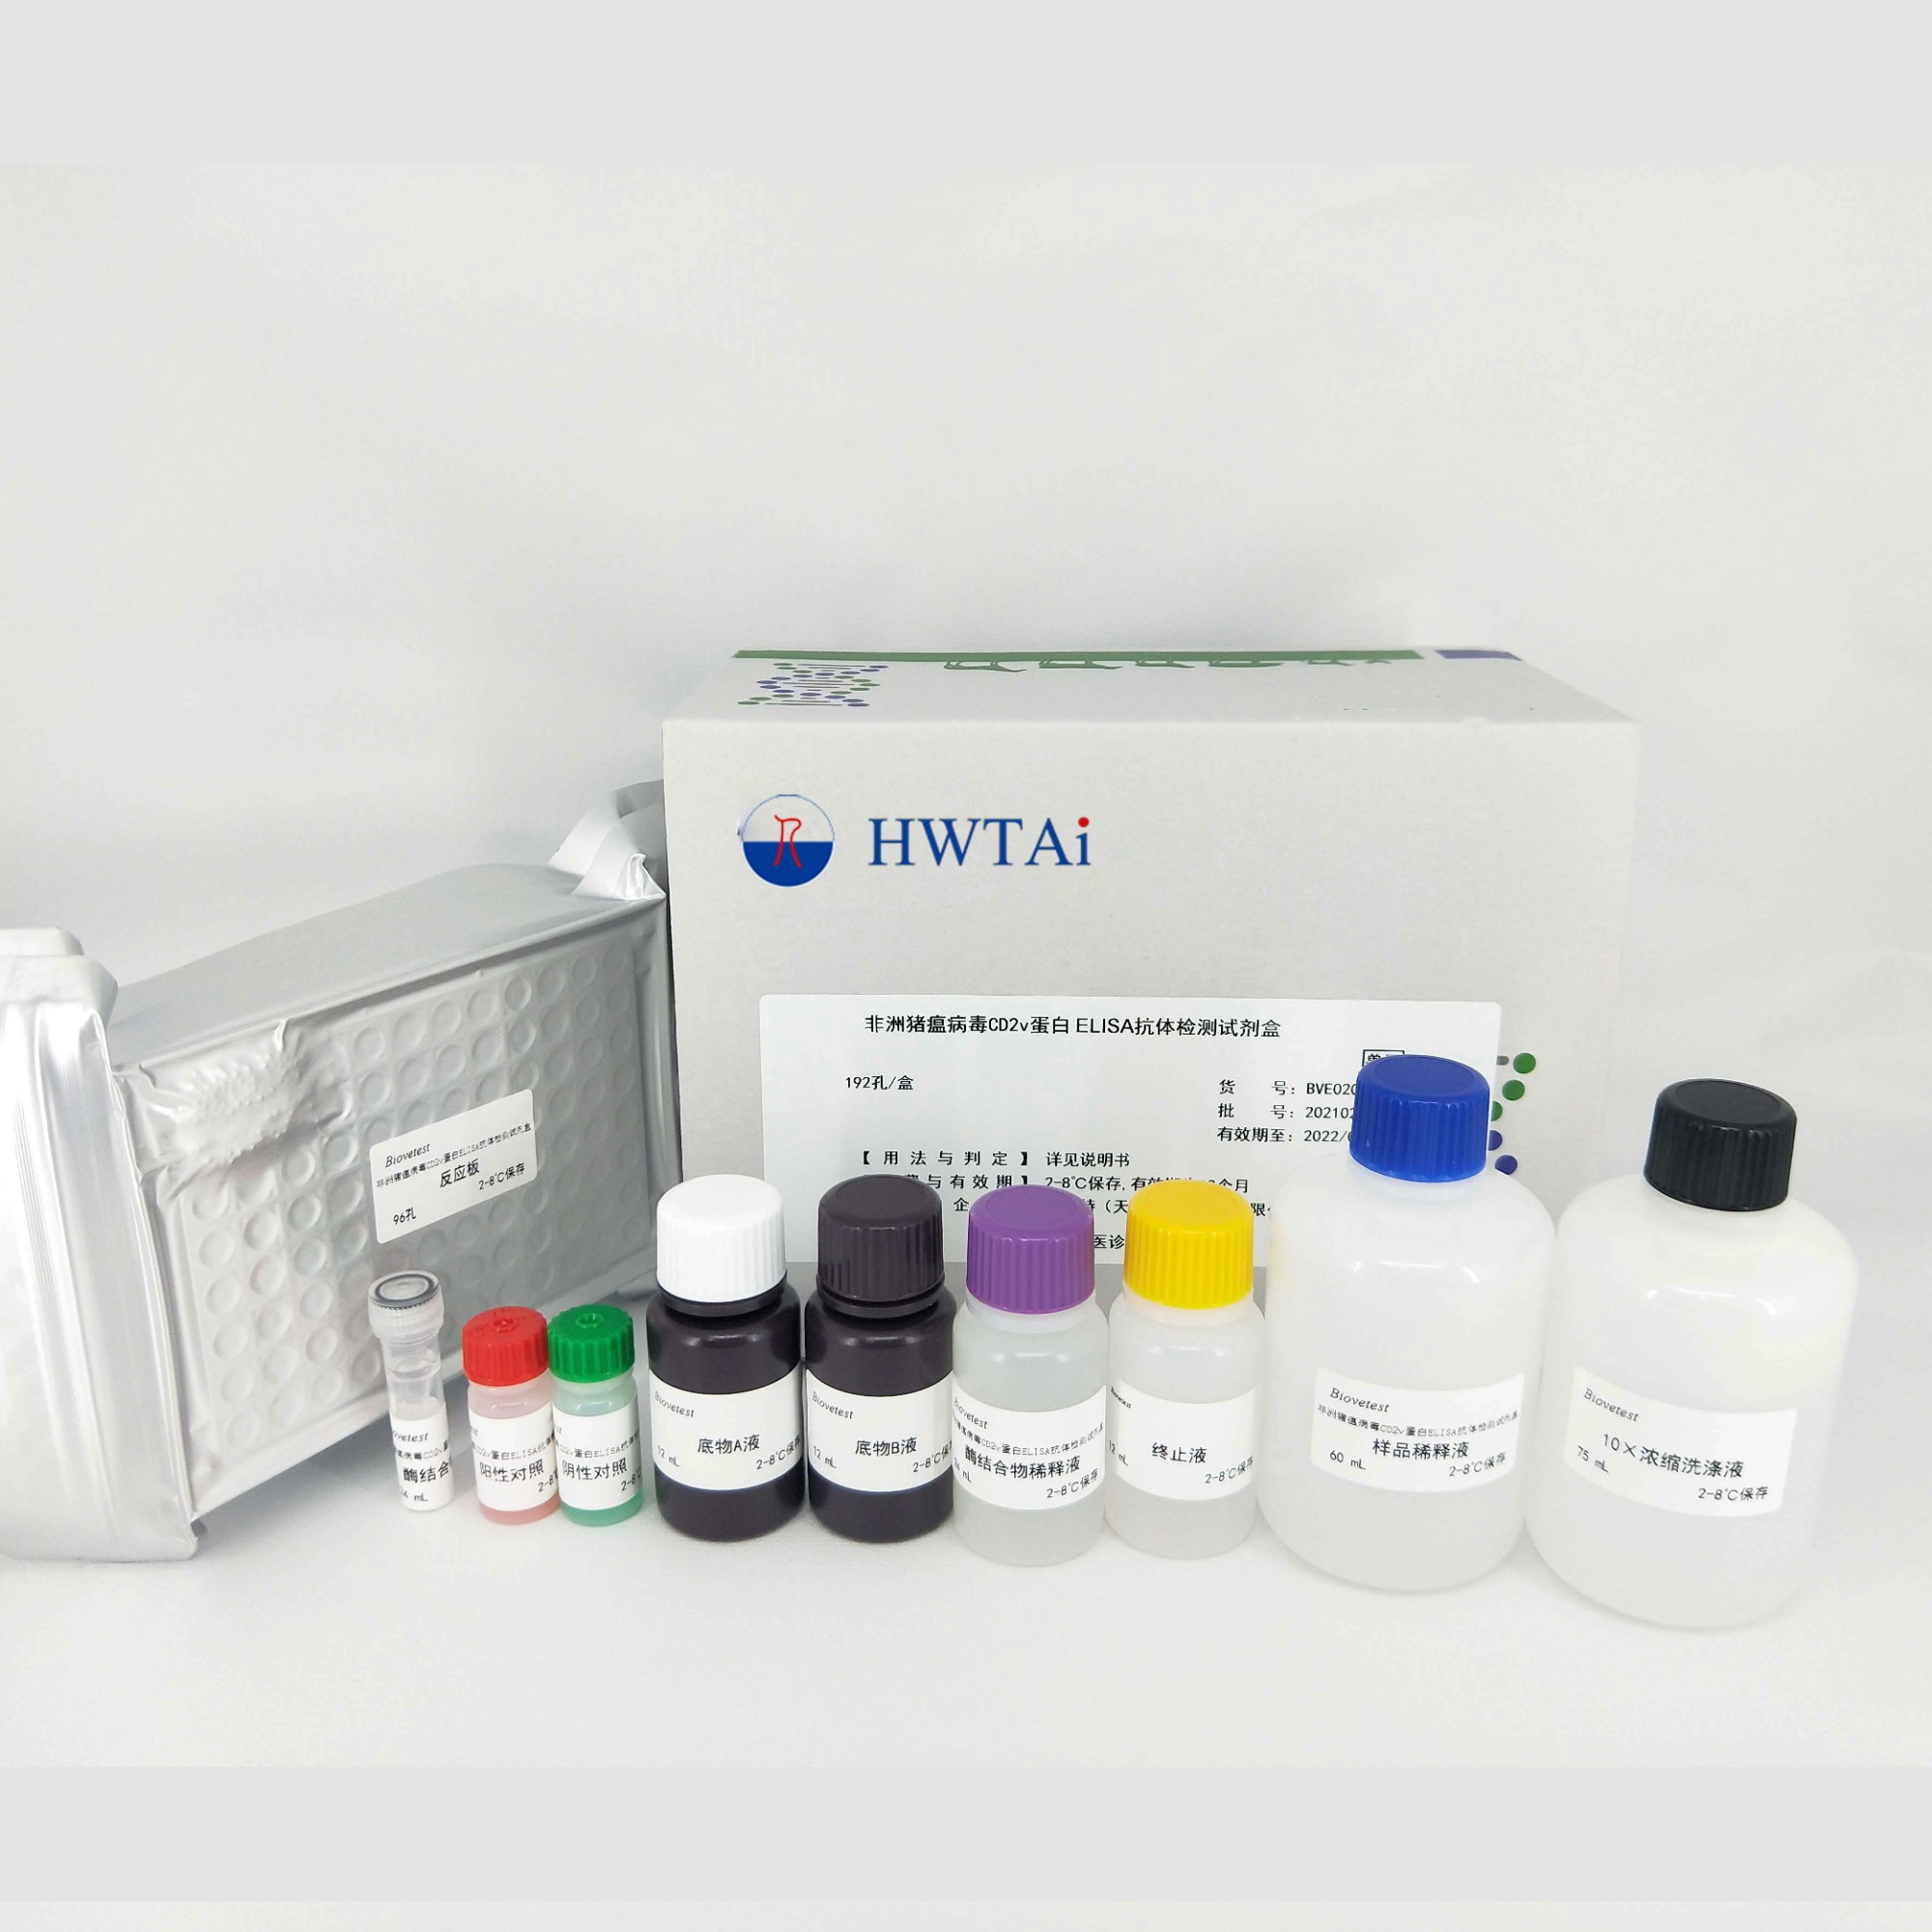 African swine fever virus CD2v protein ELISA antibody detection kit